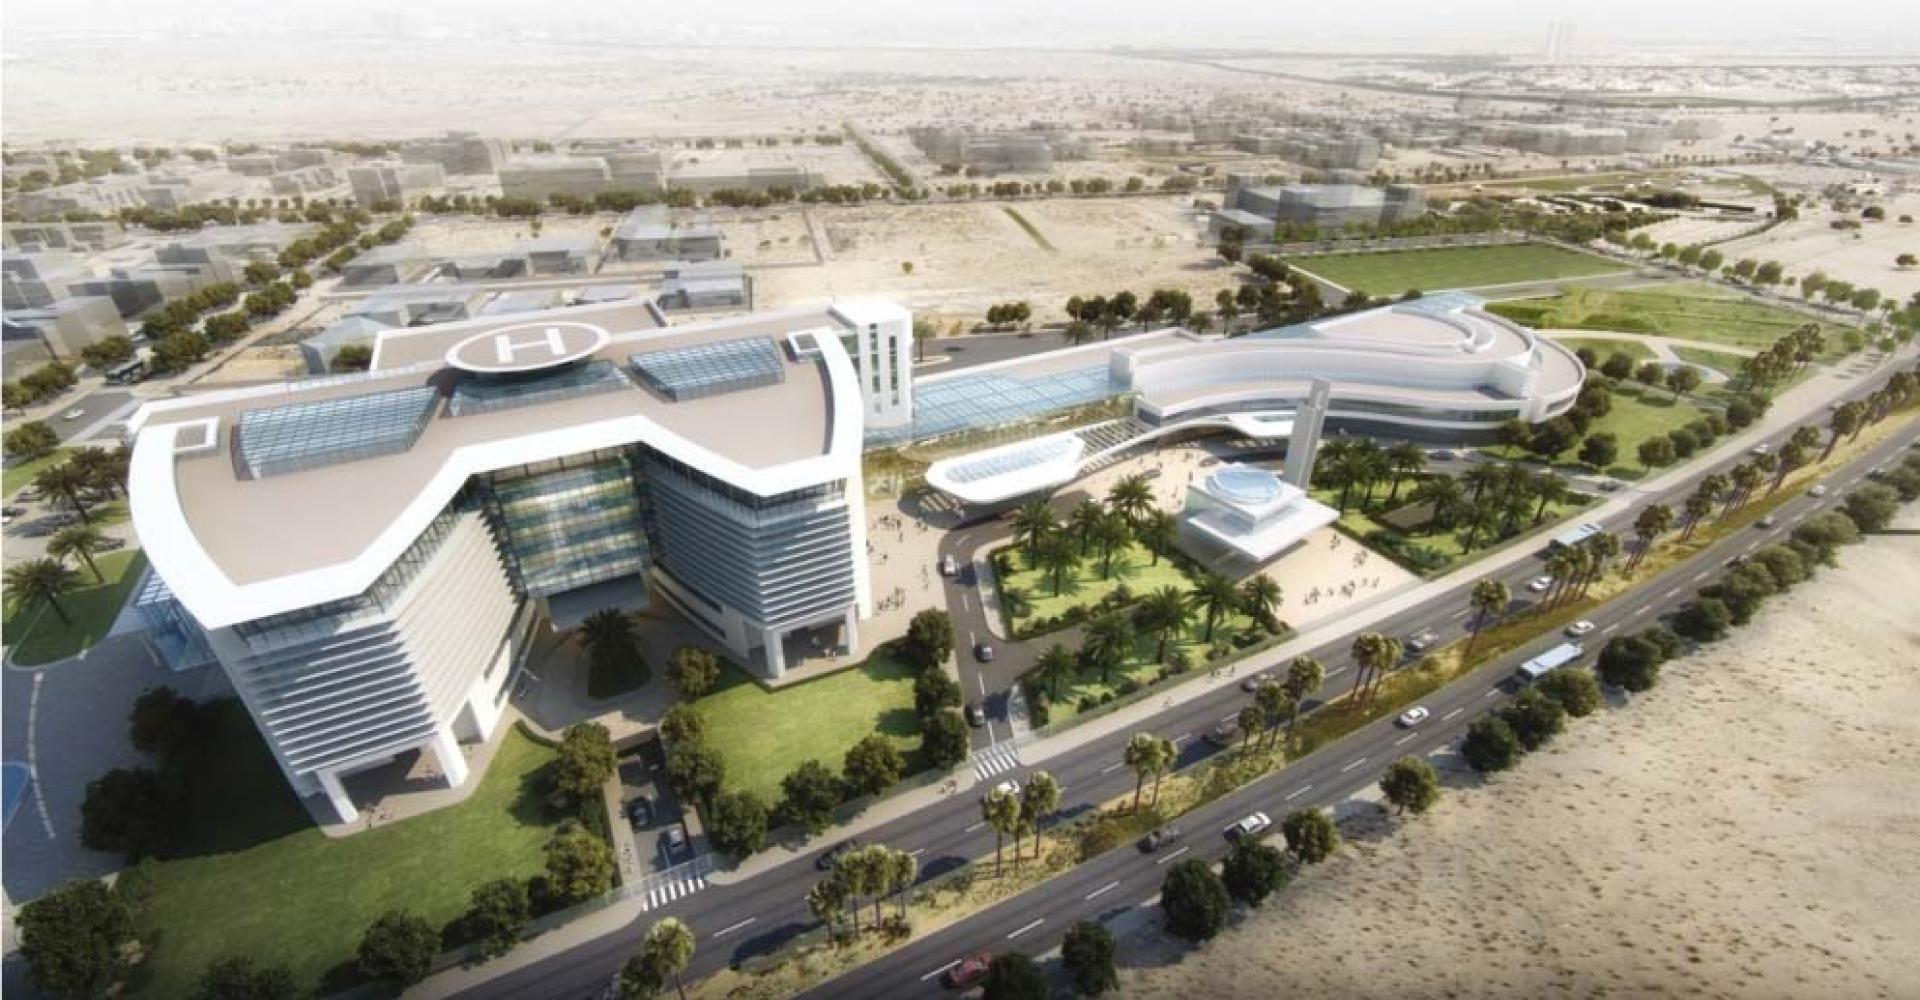 Shk. Khalifa Central Hospital – Fujairah (260 bed)